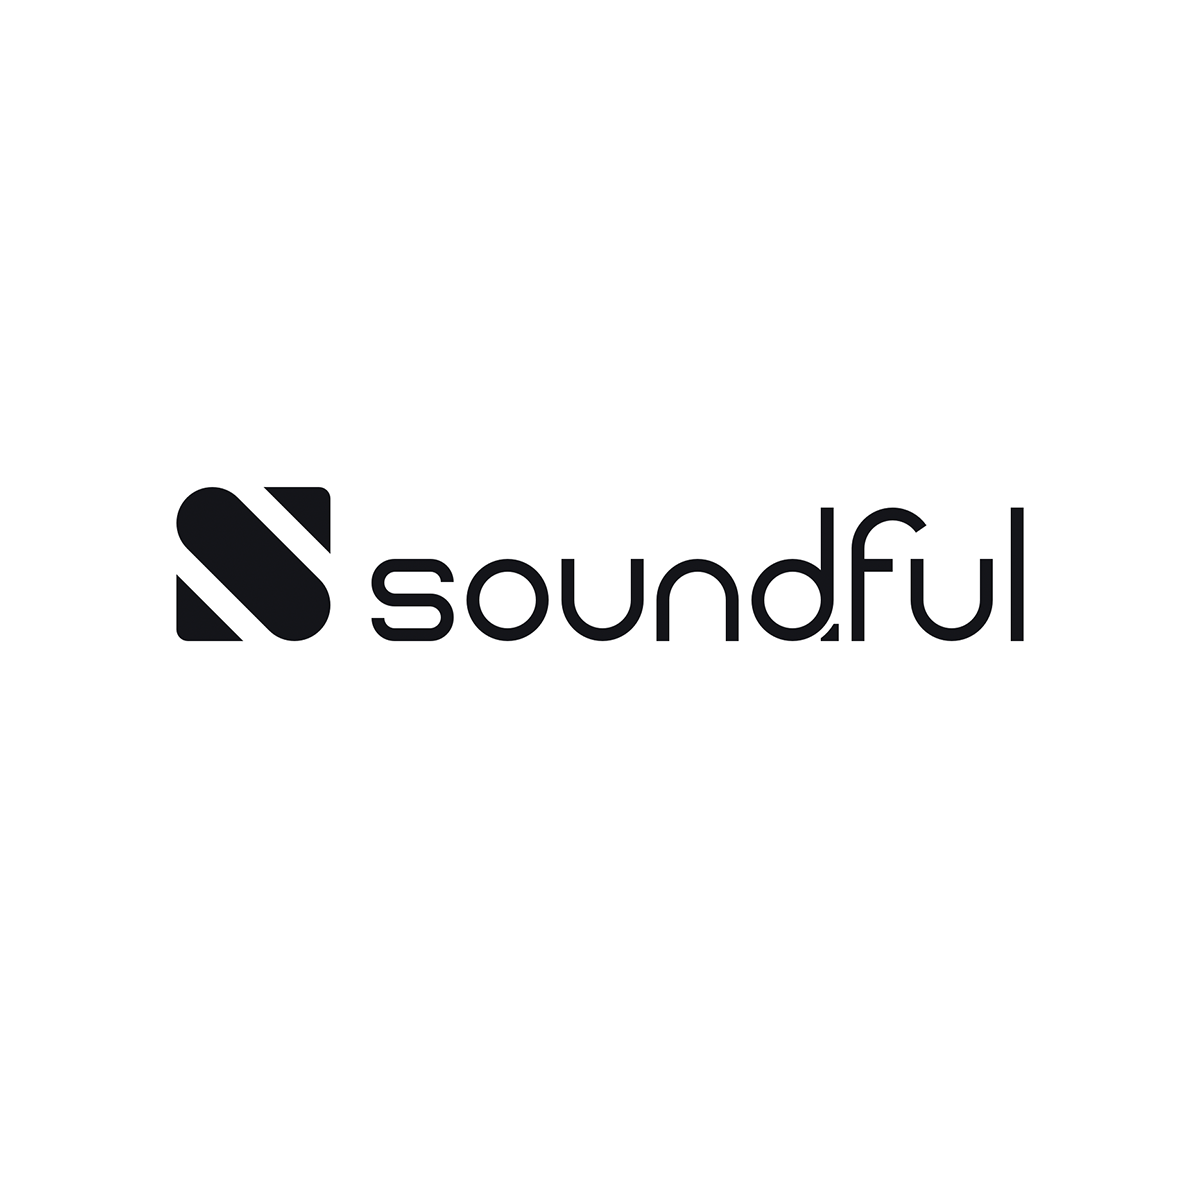 United States smartboost ajansı, Soundful için, dijital pazarlamalarını, SEO ve işlerini büyütmesi konusunda yardımcı oldu